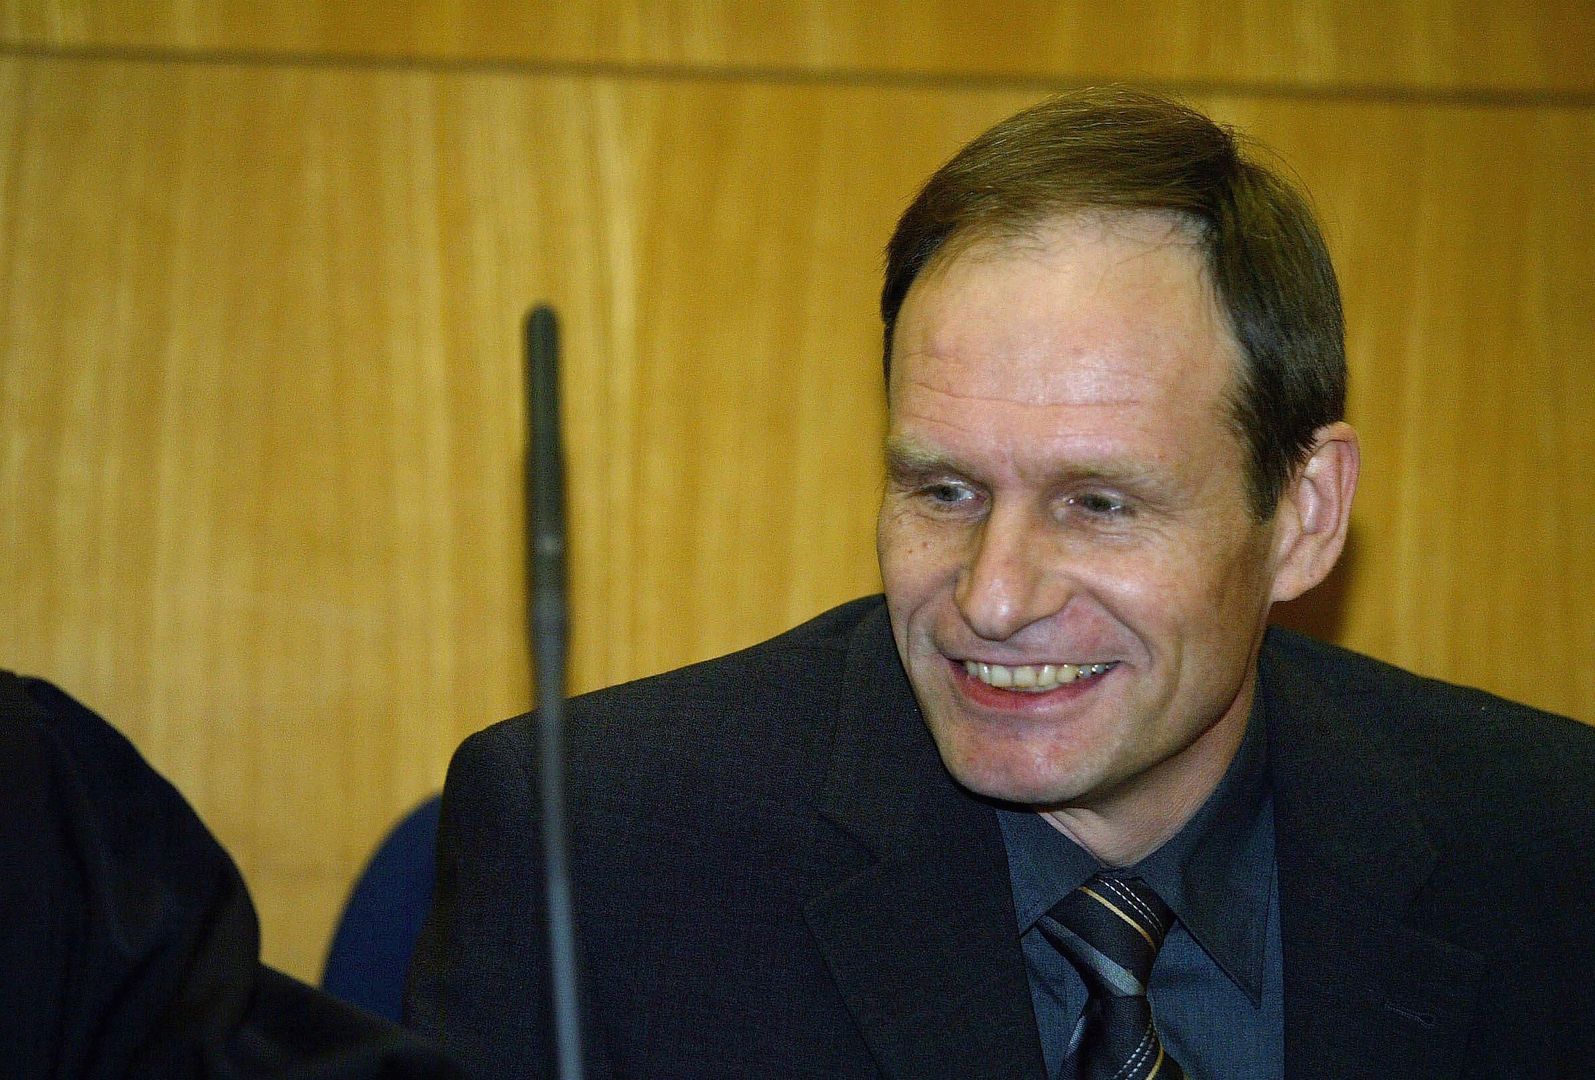  Armin Meiwes podczas procesu w Sądzie Okręgowym we Frankfurcie